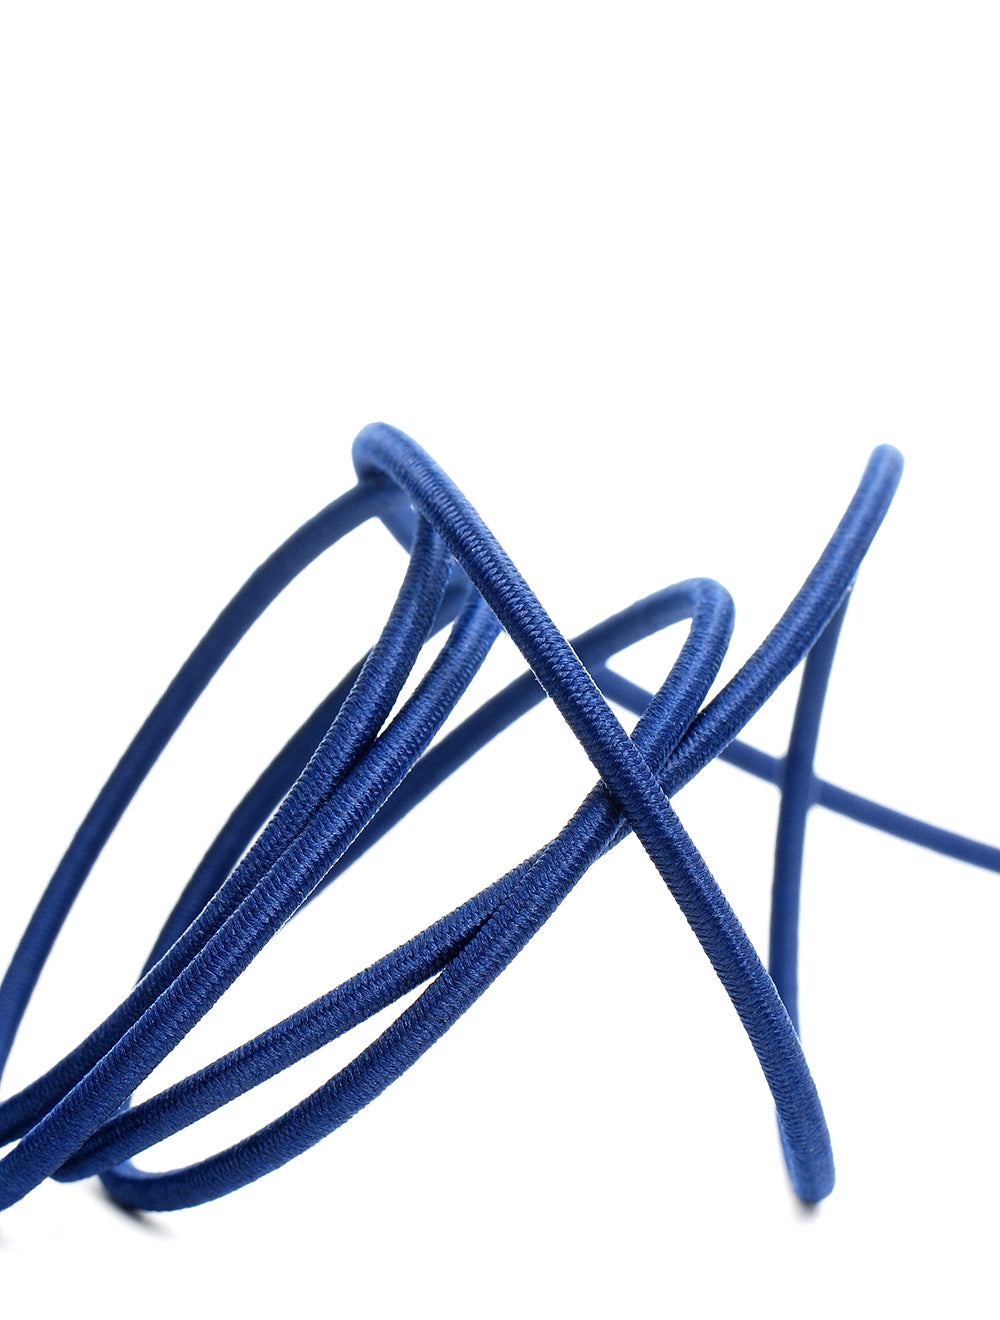 Cordón elástico redondo Azul Oscuro 2mm x 3M. Labores, Costura y